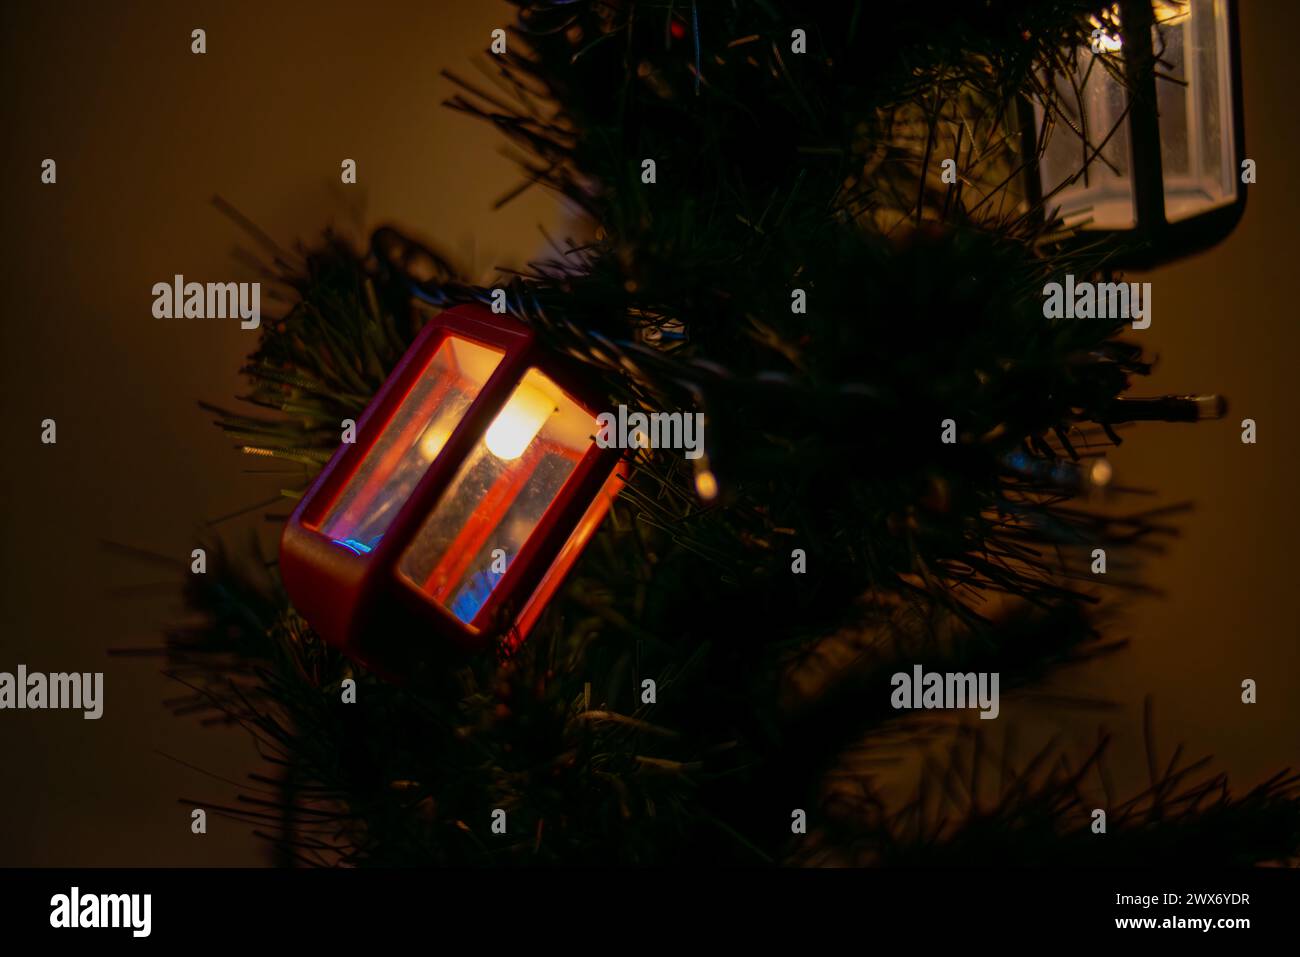 Le luminose lanterne a forma di lampione adornano l'albero di Natale, creando un'atmosfera festosa e lo spirito natalizio con un'illuminazione urbana decorativa. Foto Stock